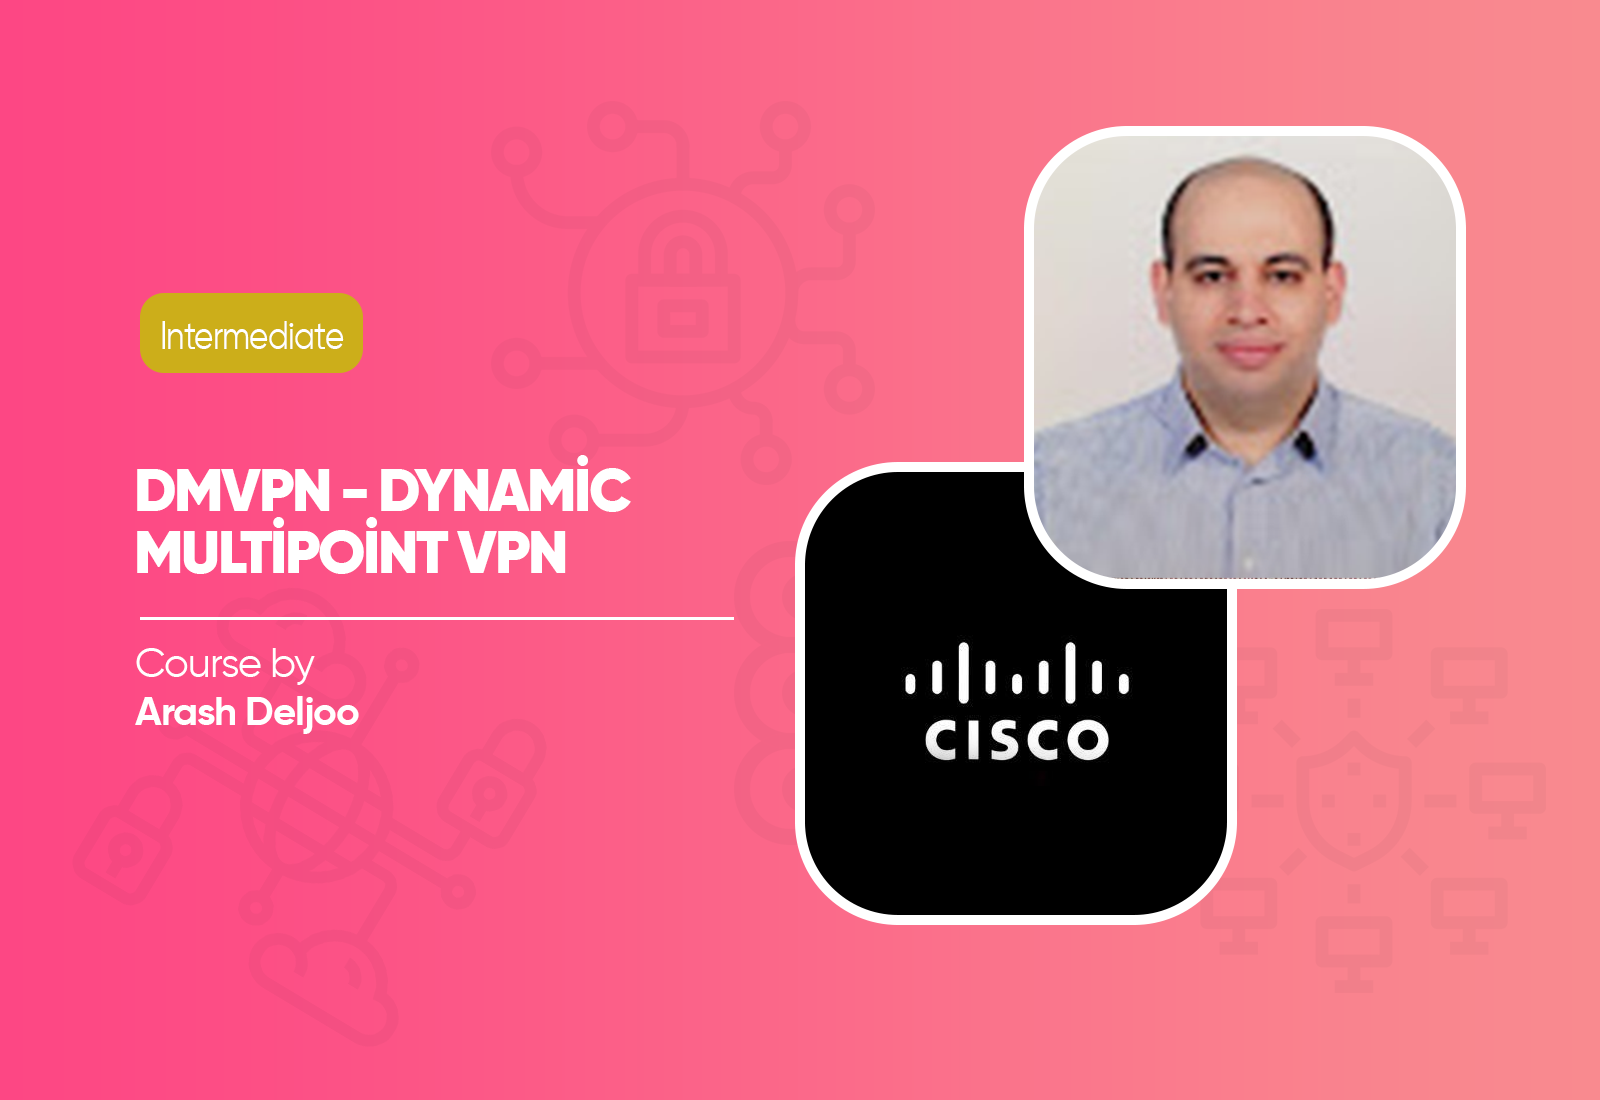 DMVPN - Dynamic Multipoint VPN Course